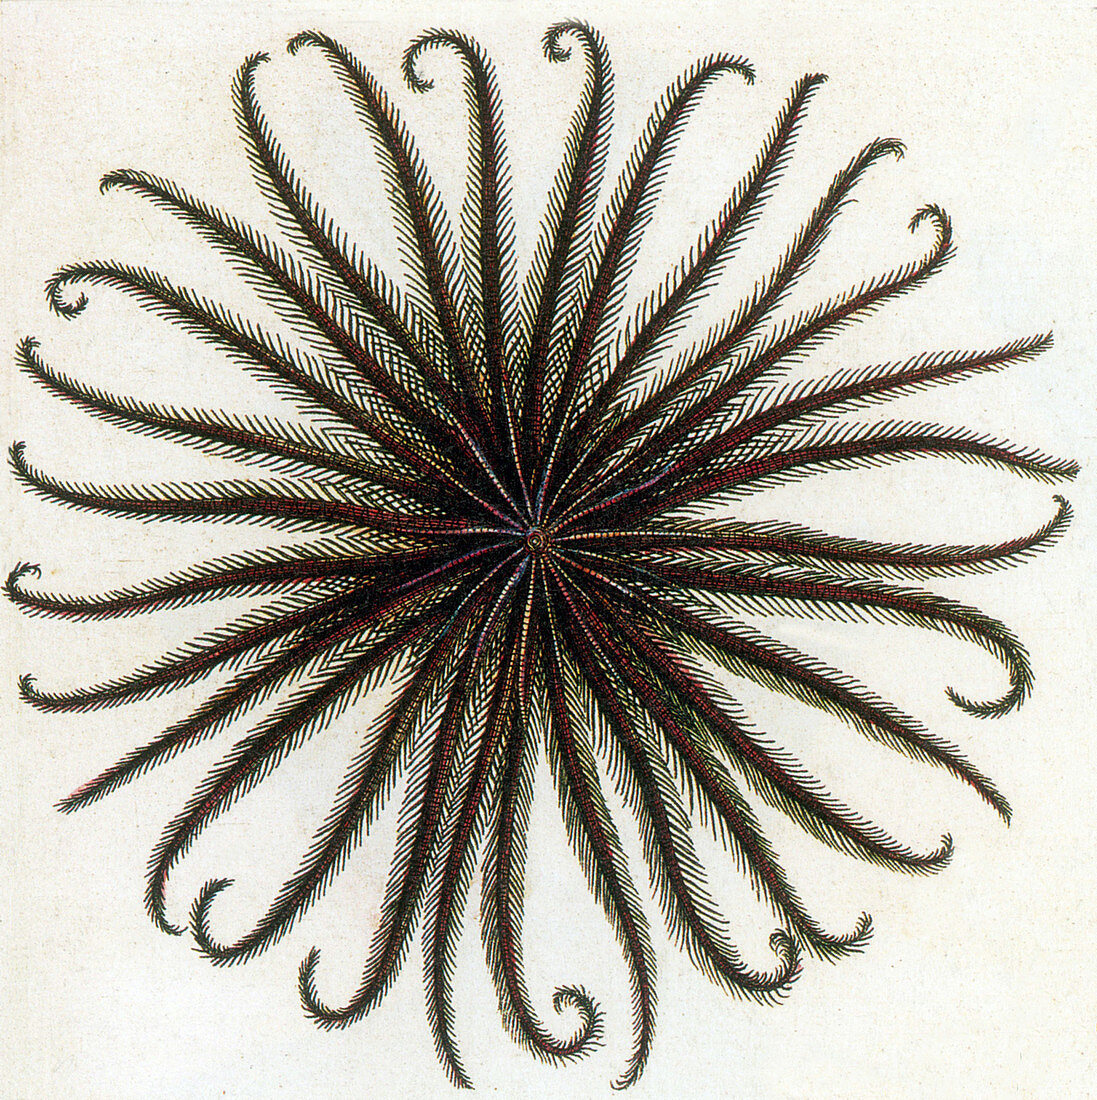 Crinoid,Feather Star,Illustration